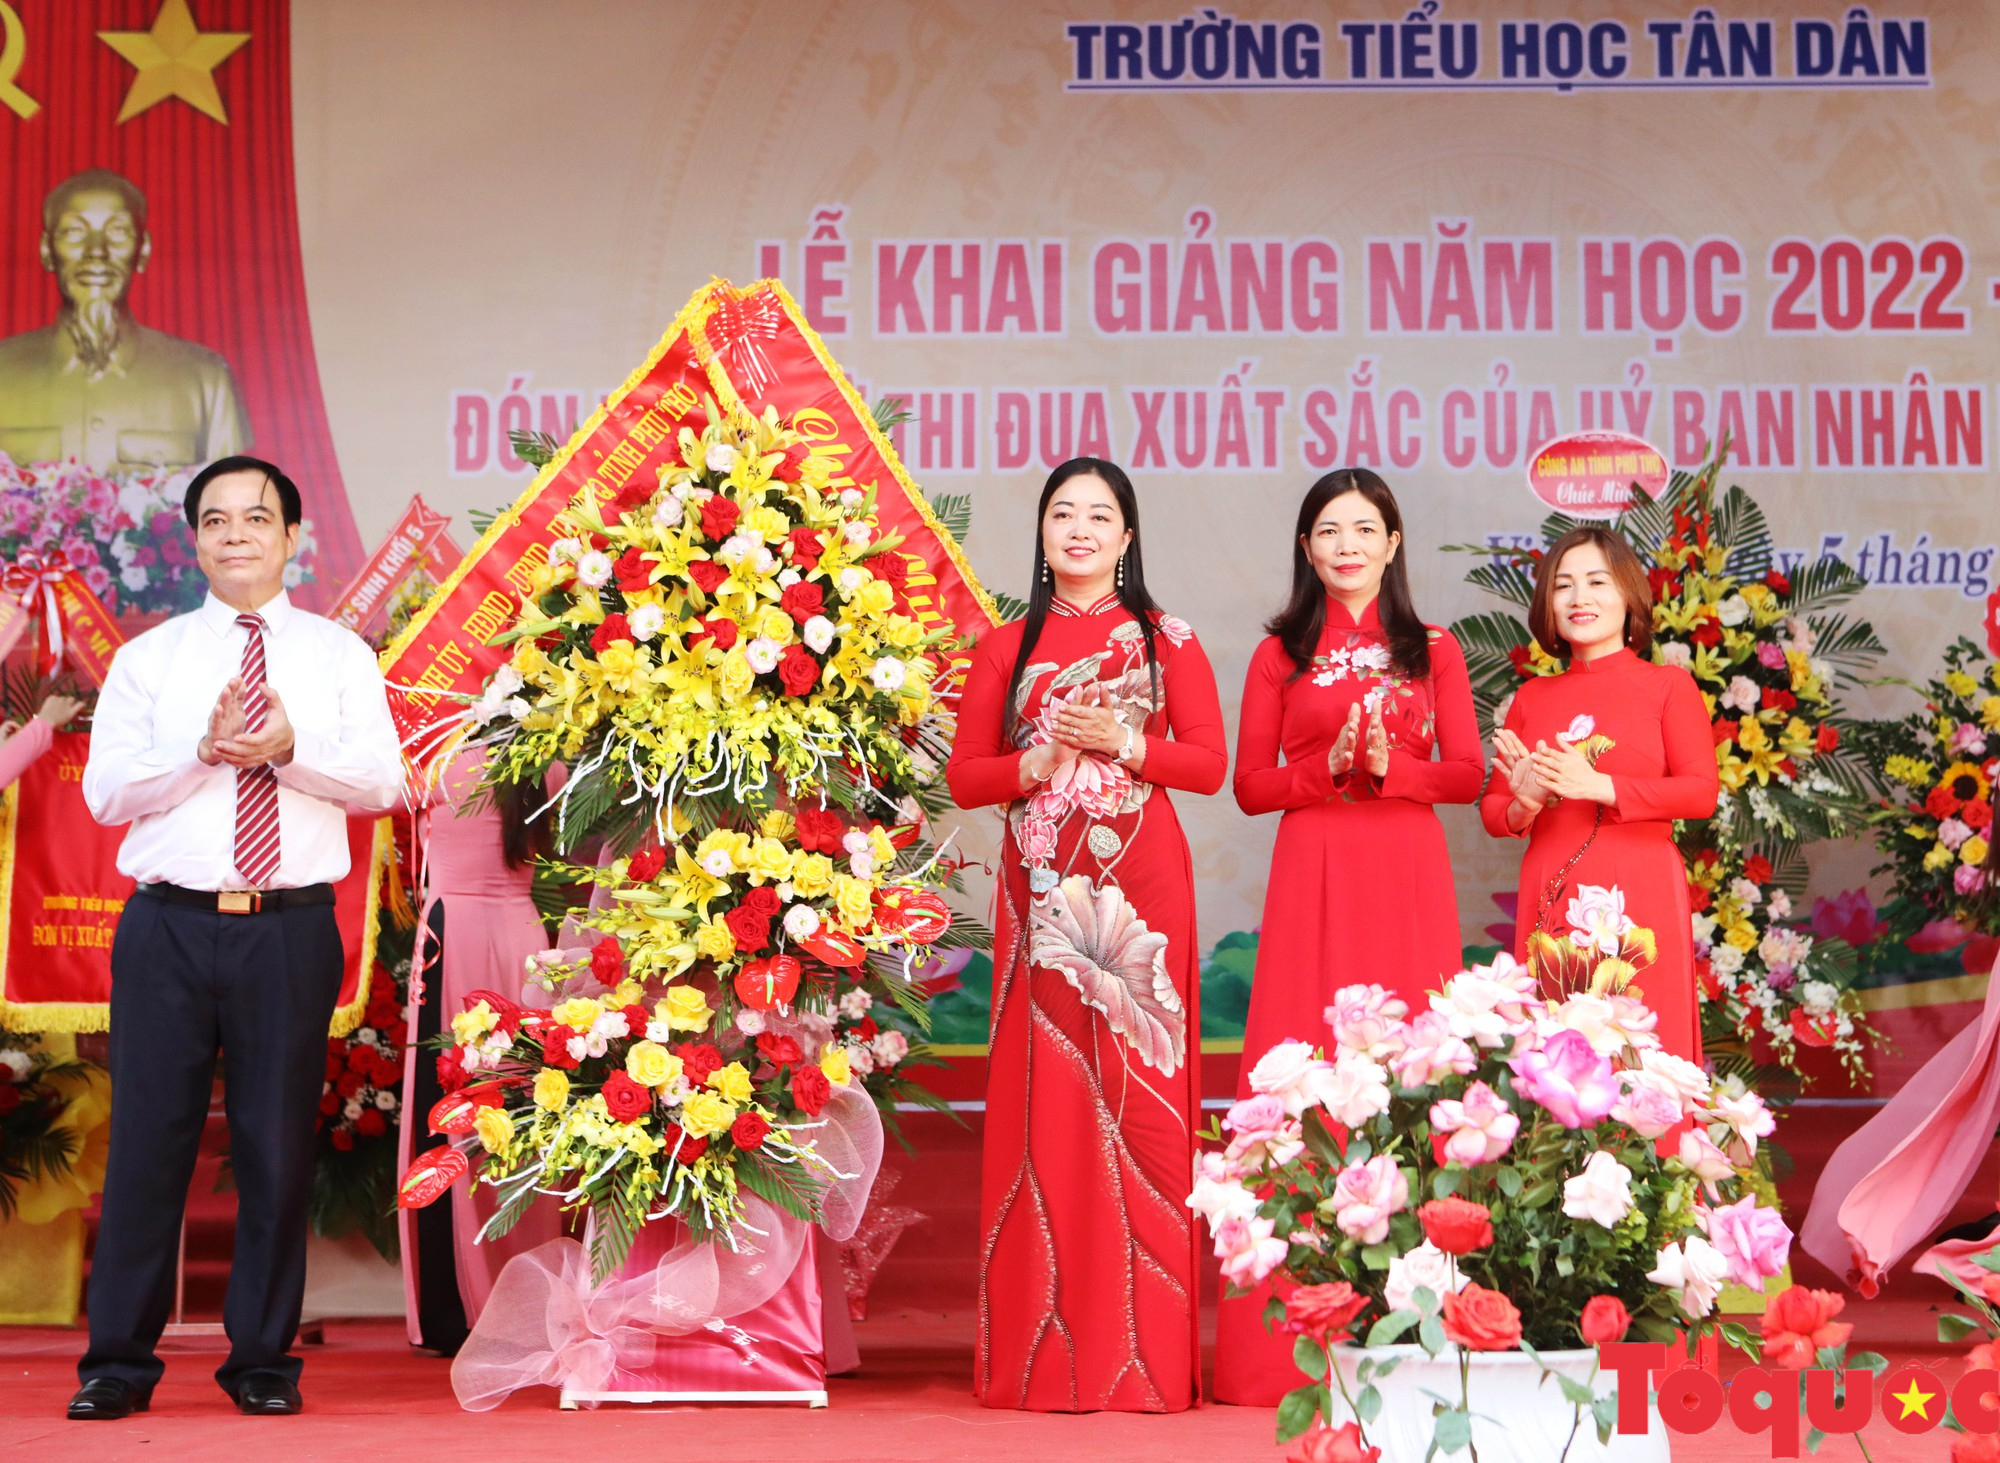 Trường tiểu học Tân Dân khai giảng năm học mới, đón nhận Cờ thi đua của UBND tỉnh Phú Thọ - Ảnh 10.